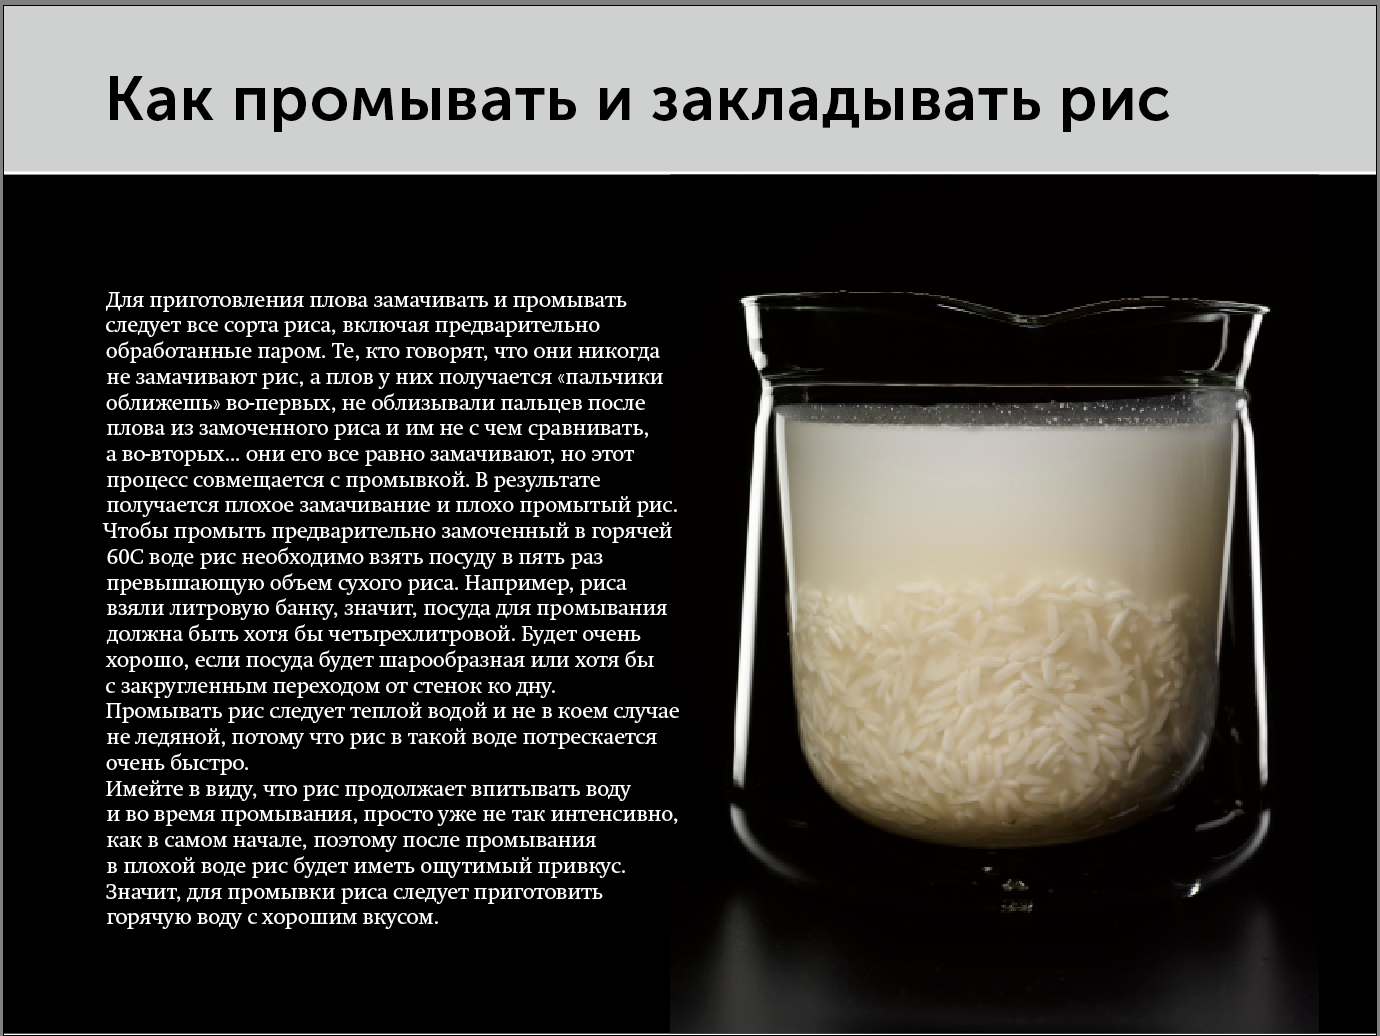 Рис держит воду. Соотношение риса и воды для плова. Порции риса и воды для плова. Соотношение воды и риса в плове в стаканах. Рис пропорции воды и риса для плова.